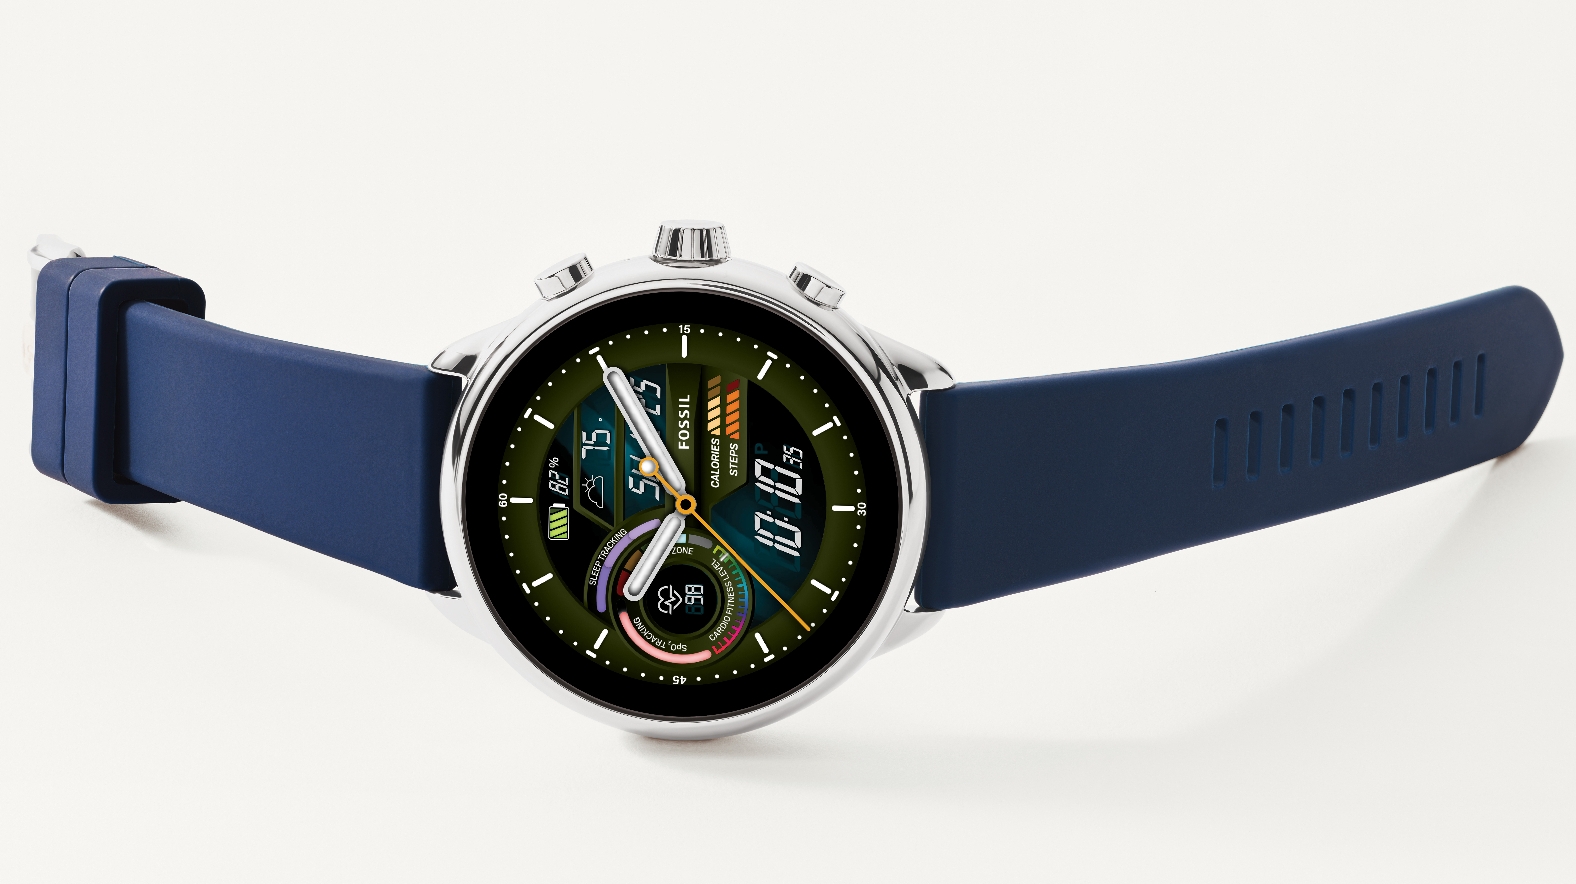 Fossil Gen 6 Wellness Edition Is the Next Wear OS 3 Smartwatch - CNET